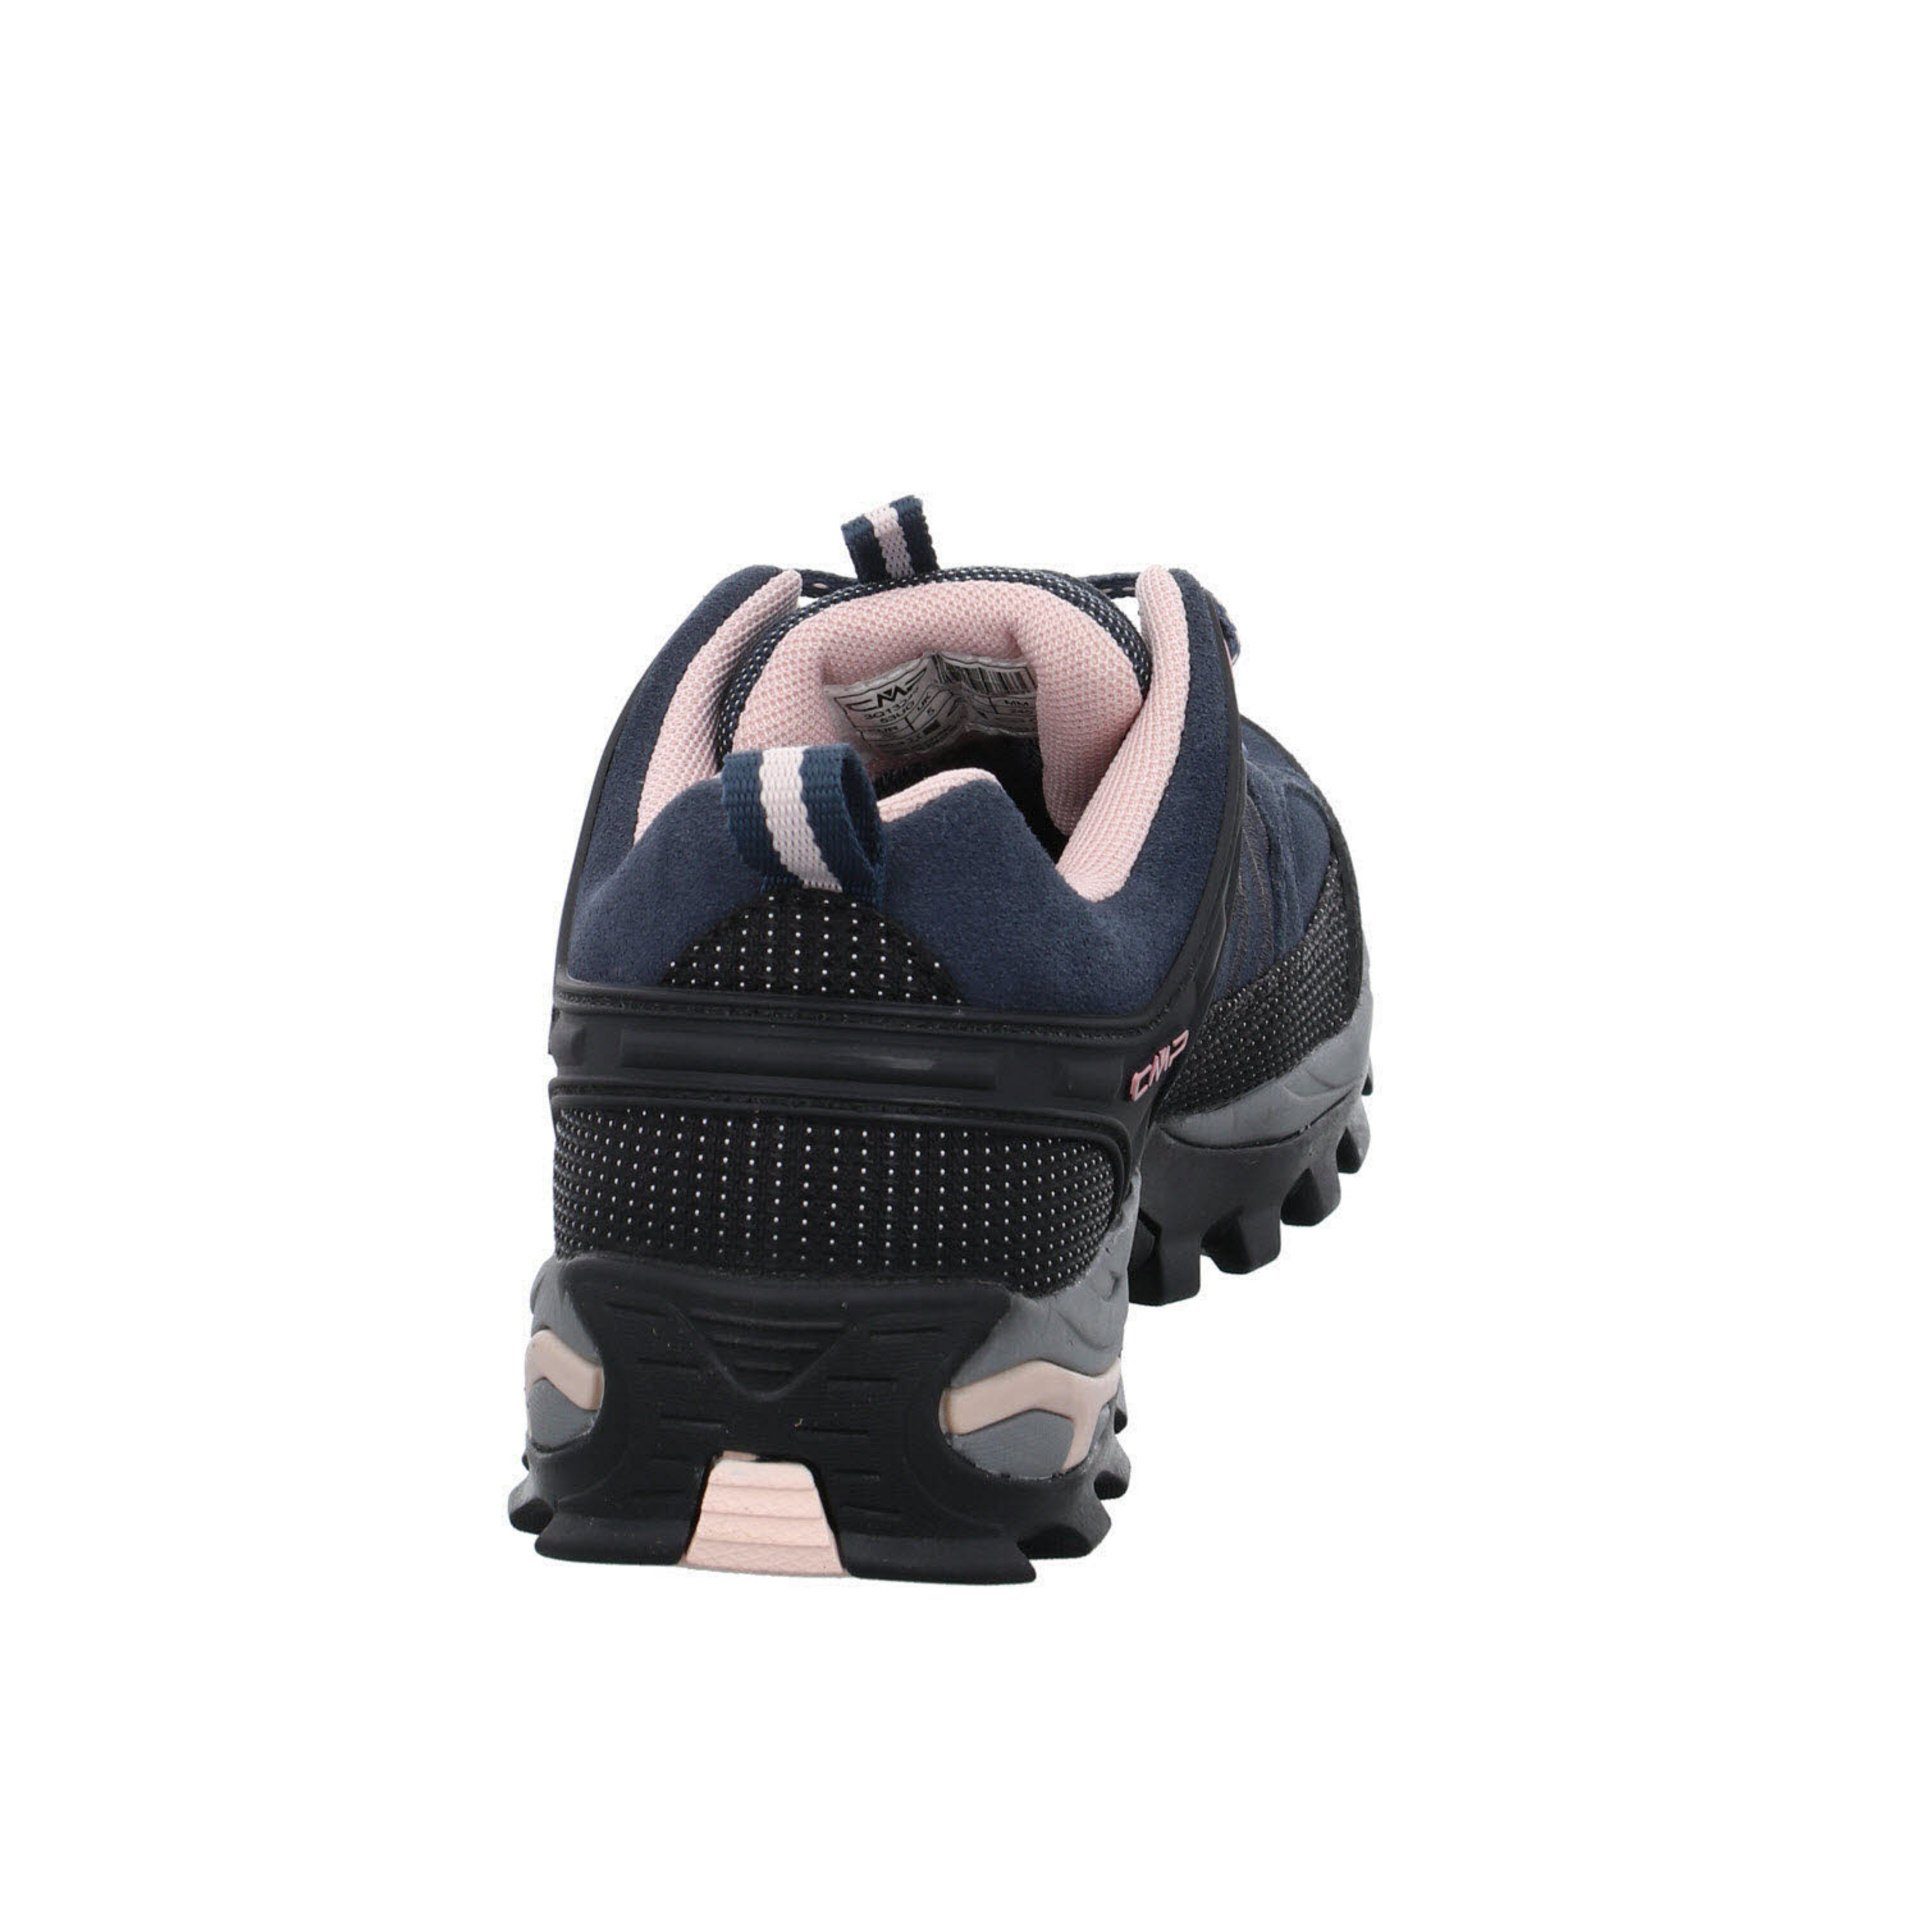 CMP Damen Schuhe Outdoor Riegel Outdoorschuh Leder-/Textilkombination (201) Low anthrazit Outdoorschuh